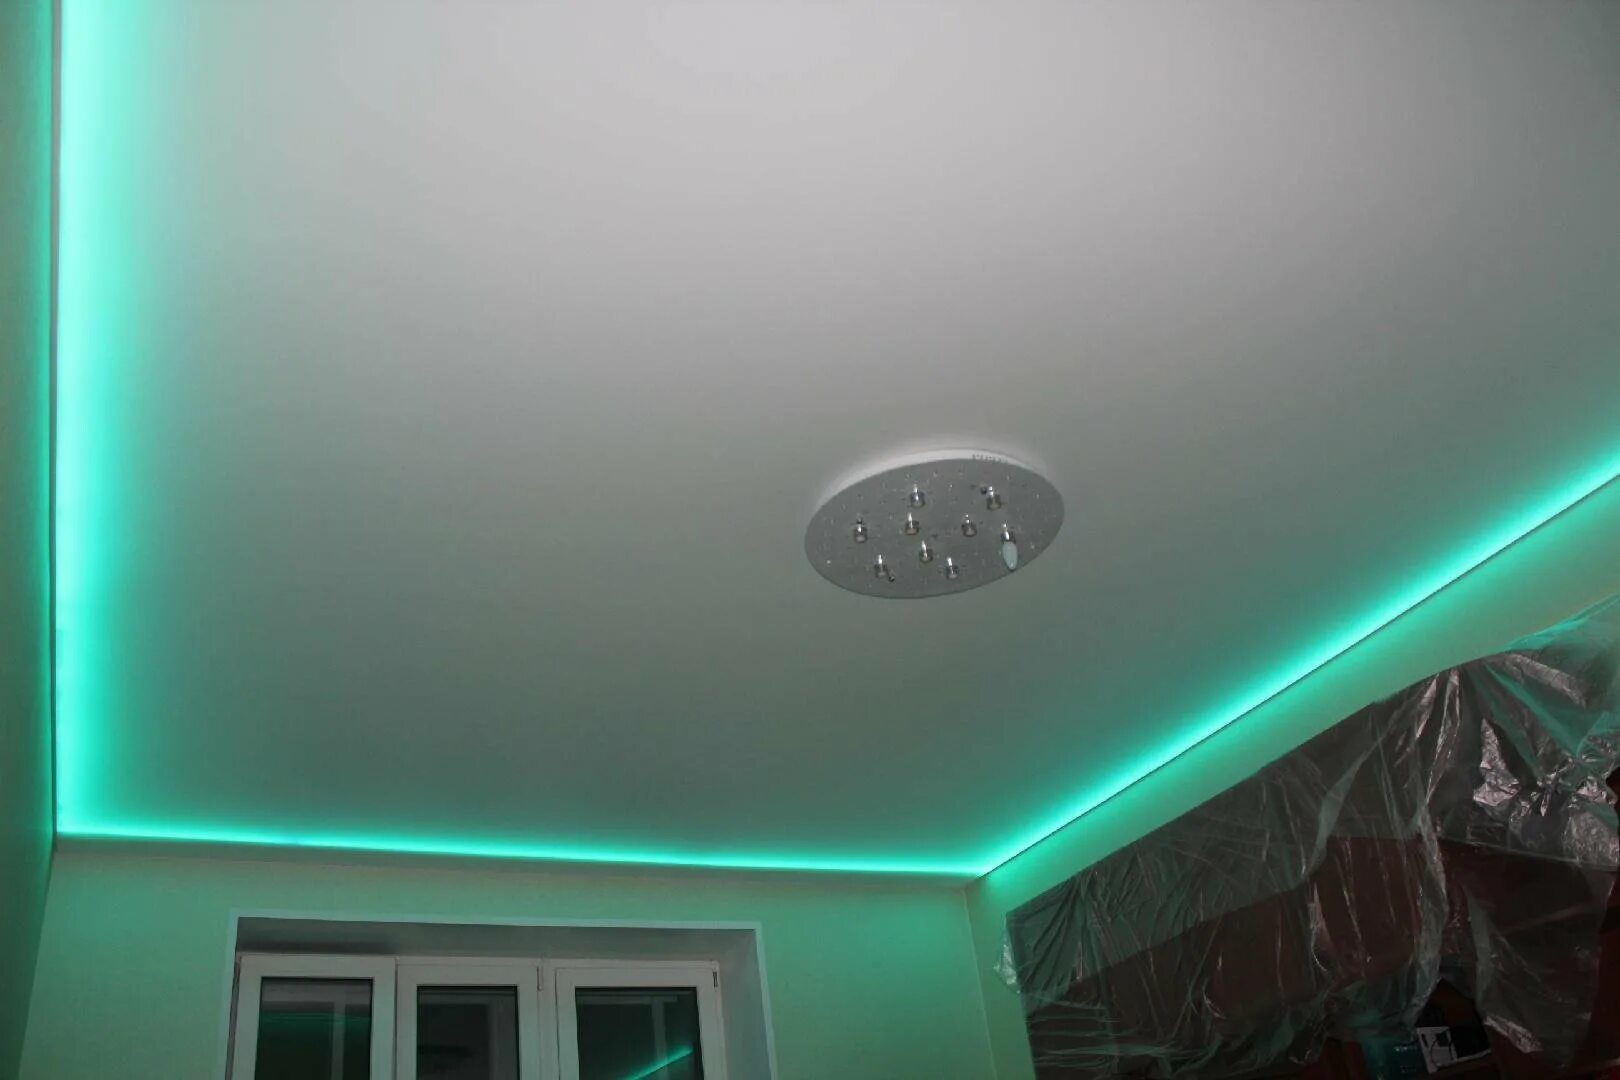 Купить потолки с подсветкой. Натяжные потолки с подсветкой. Натяжной потолок с подсветкой внутри. Натяжной потолок с диодной подсветкой. Глянцевый потолок с подсветкой.